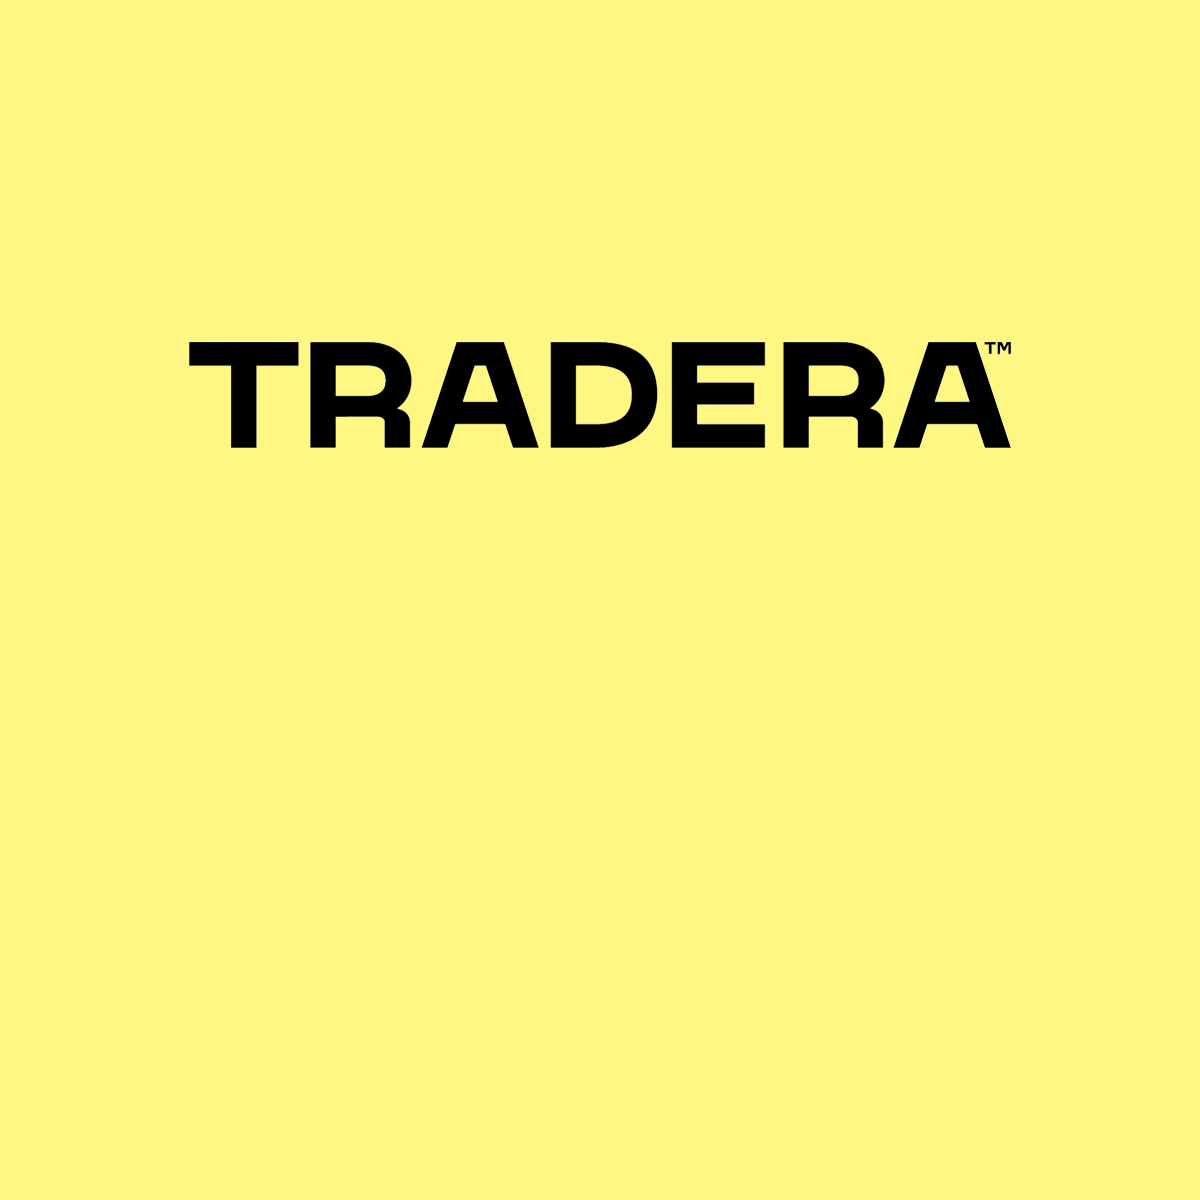 Tradera